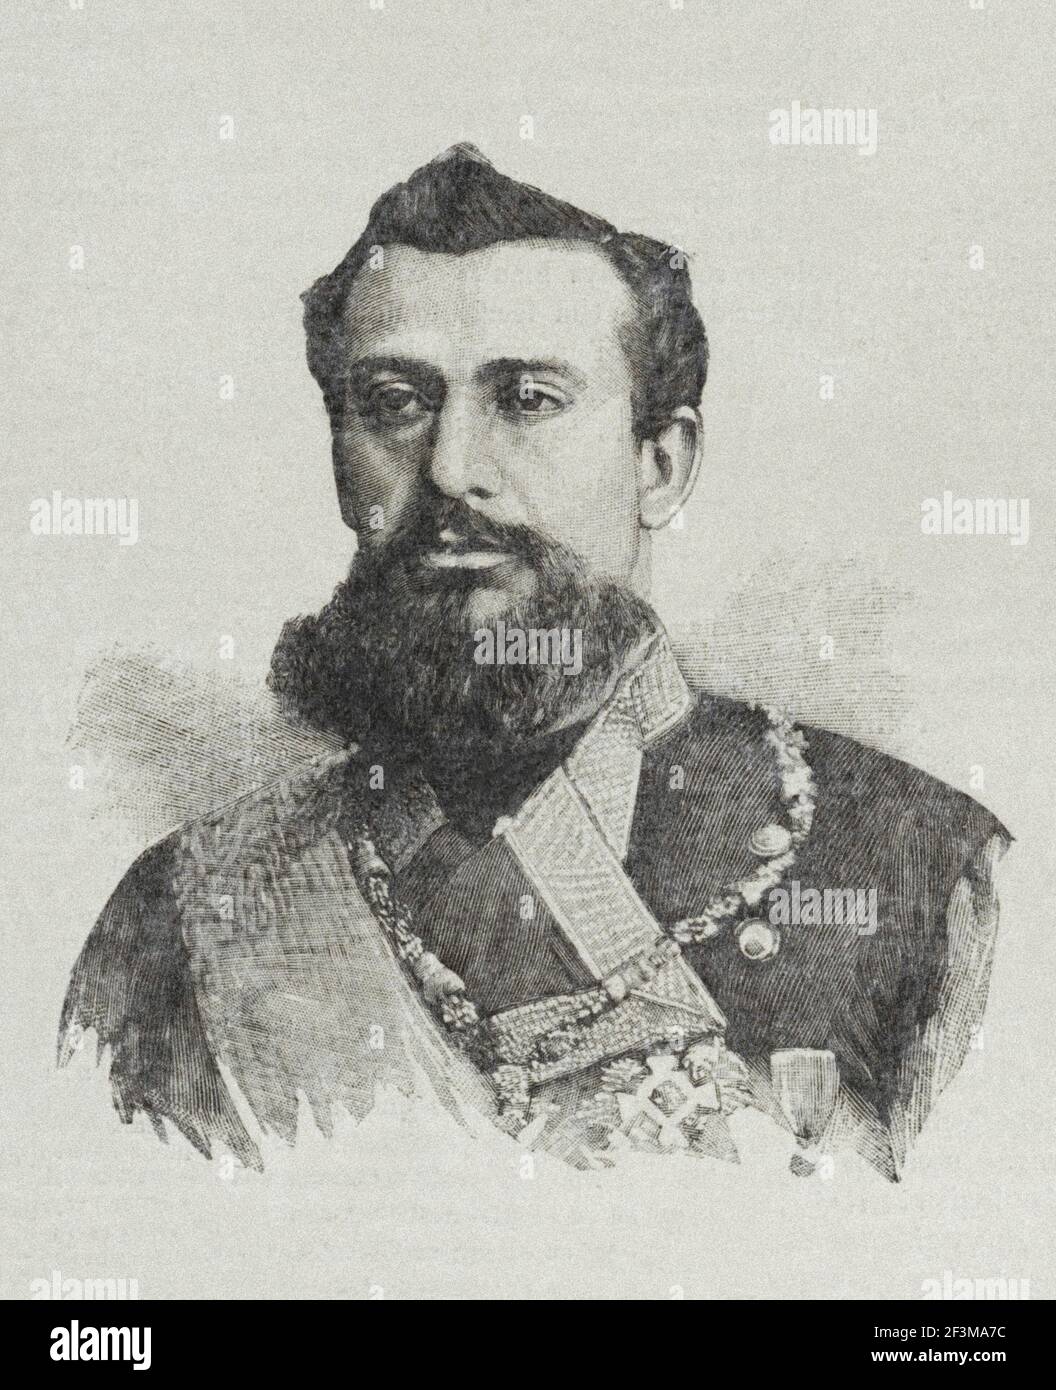 Albert I, Prince de Monaco Albert I (Albert Honoré Charles Grimaldi; 1848 – 1922) fut Prince de Monaco du 10 septembre 1889 jusqu'à sa mort. Il devo Banque D'Images